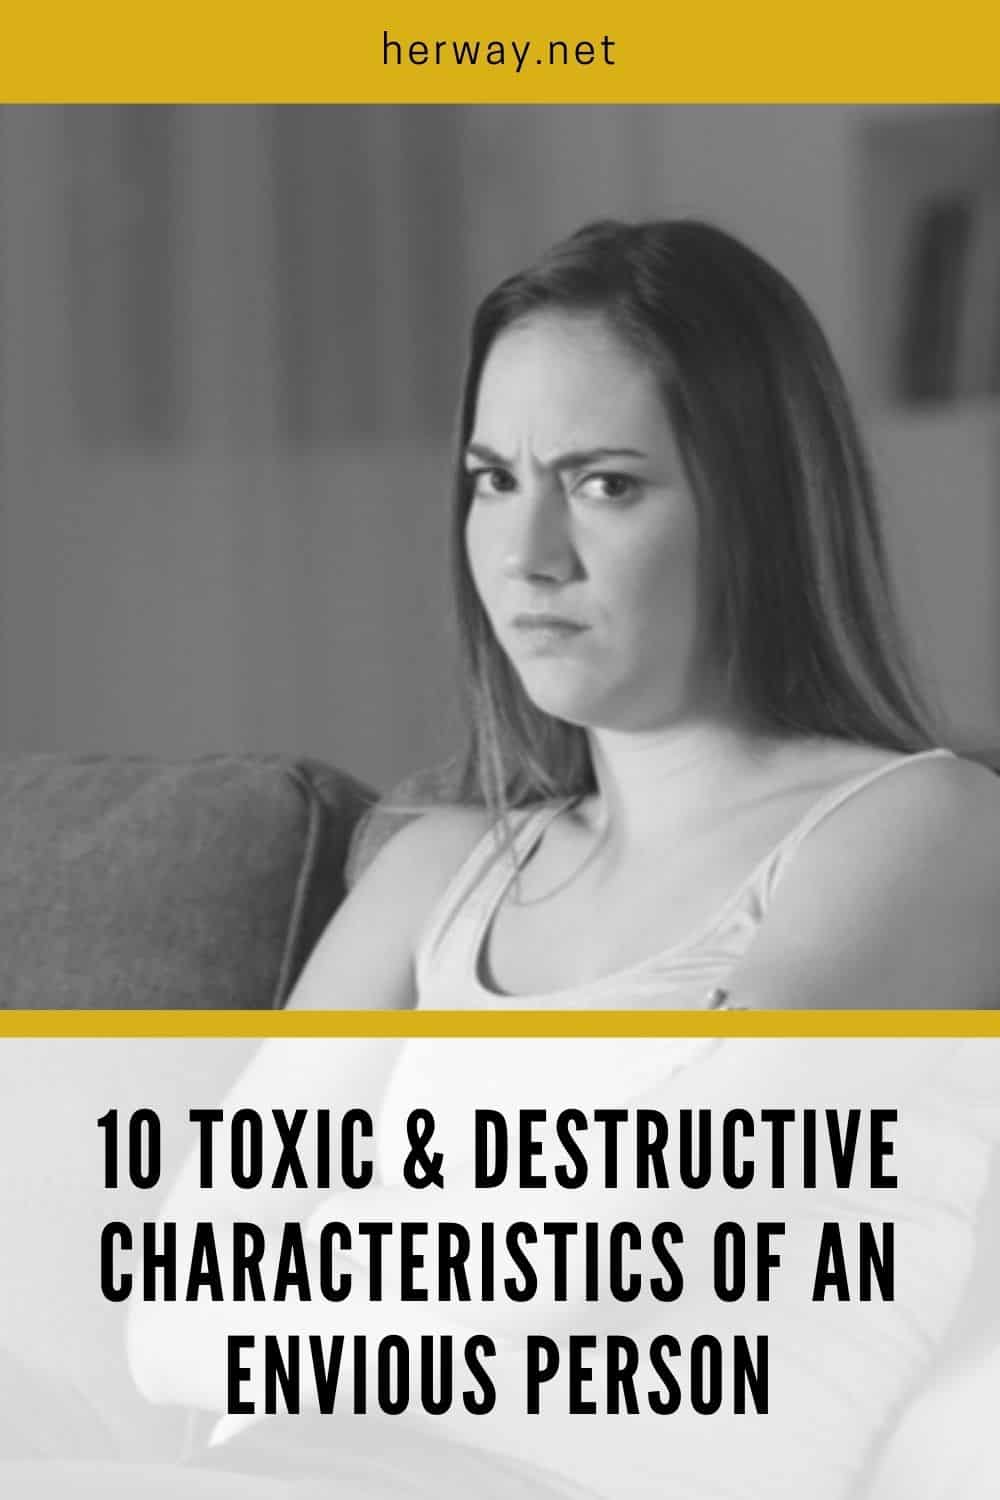 10 caratteristiche tossiche e distruttive di una persona invidiosa